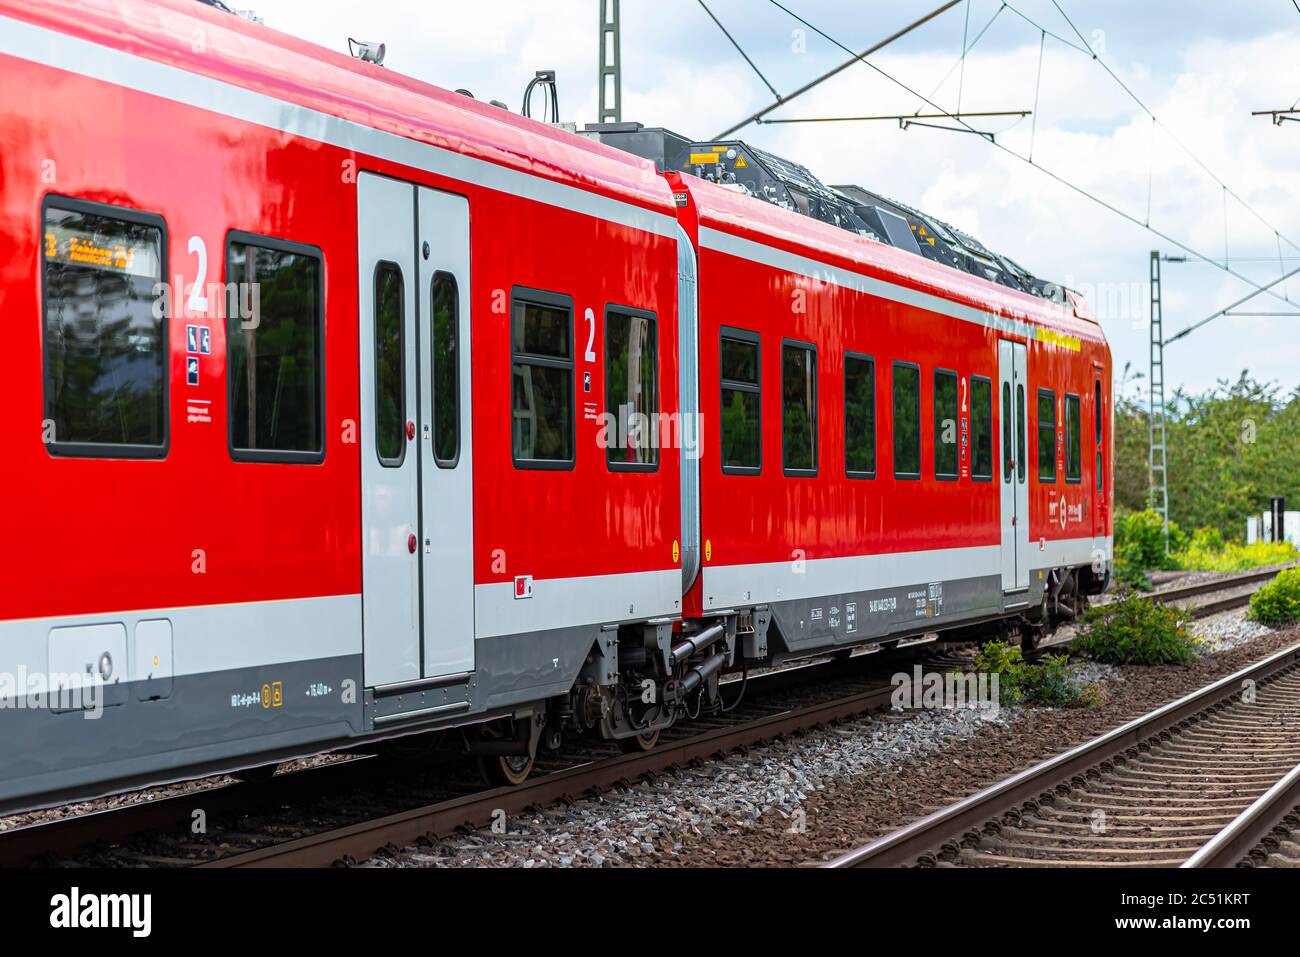 Coblenza Germania, 22 giugno 2020. Un treno elettrico per passeggeri appartenente alla compagnia Deutsche Bahn AG, che arriva ad una piccola stazione ferroviaria di Coblenza i. Foto Stock